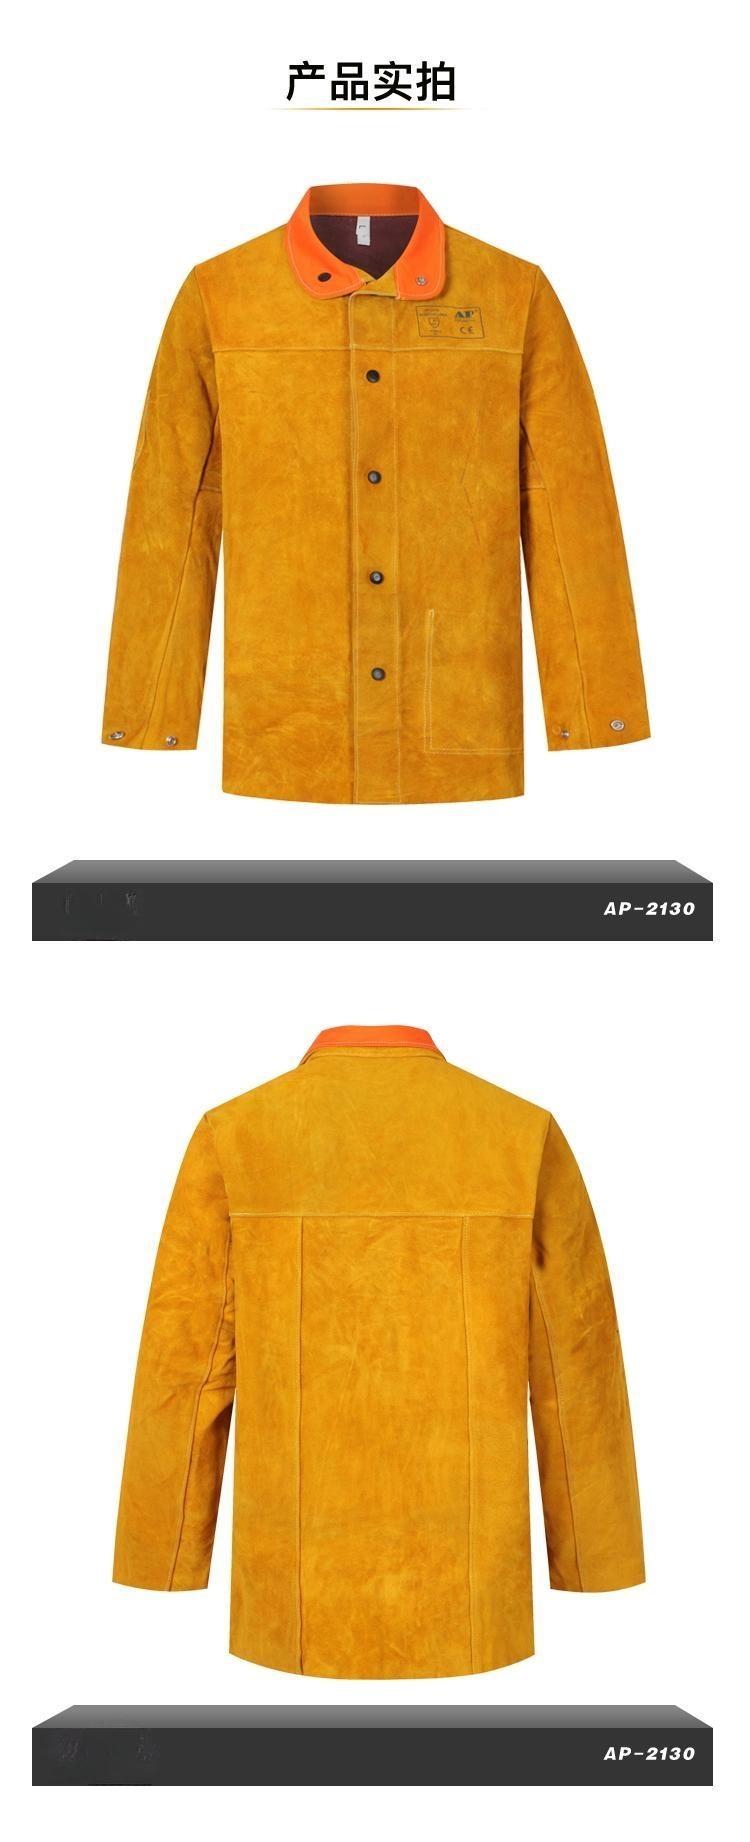 友盟AP-2130金黄色全皮焊工服上衣图片4